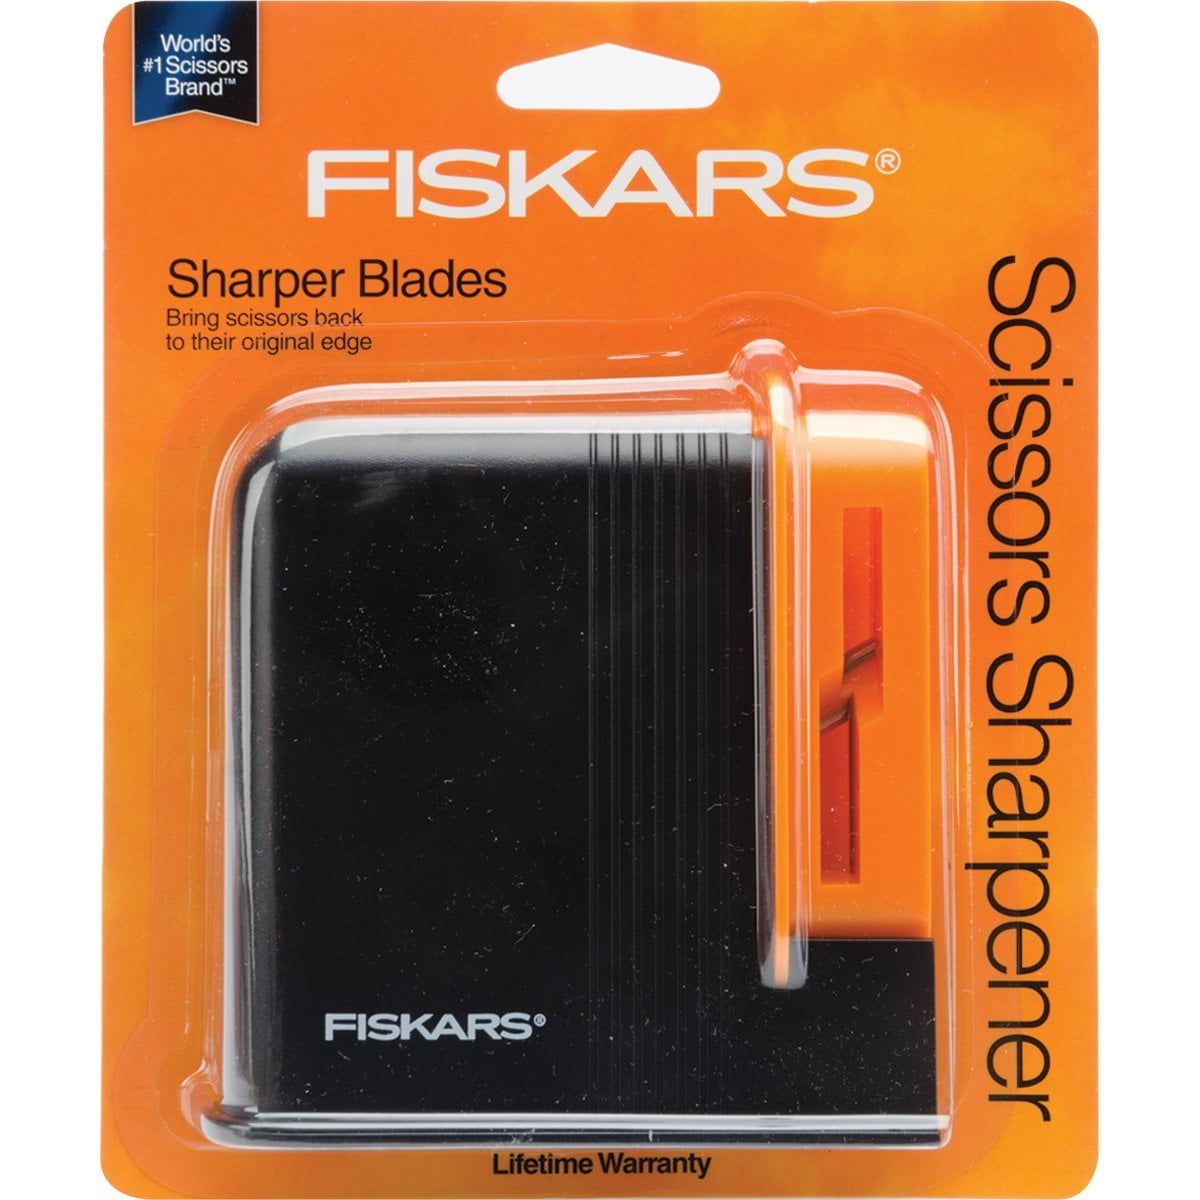  Fiskars SewSharp Scissors Sharpener (98547097) : Everything Else